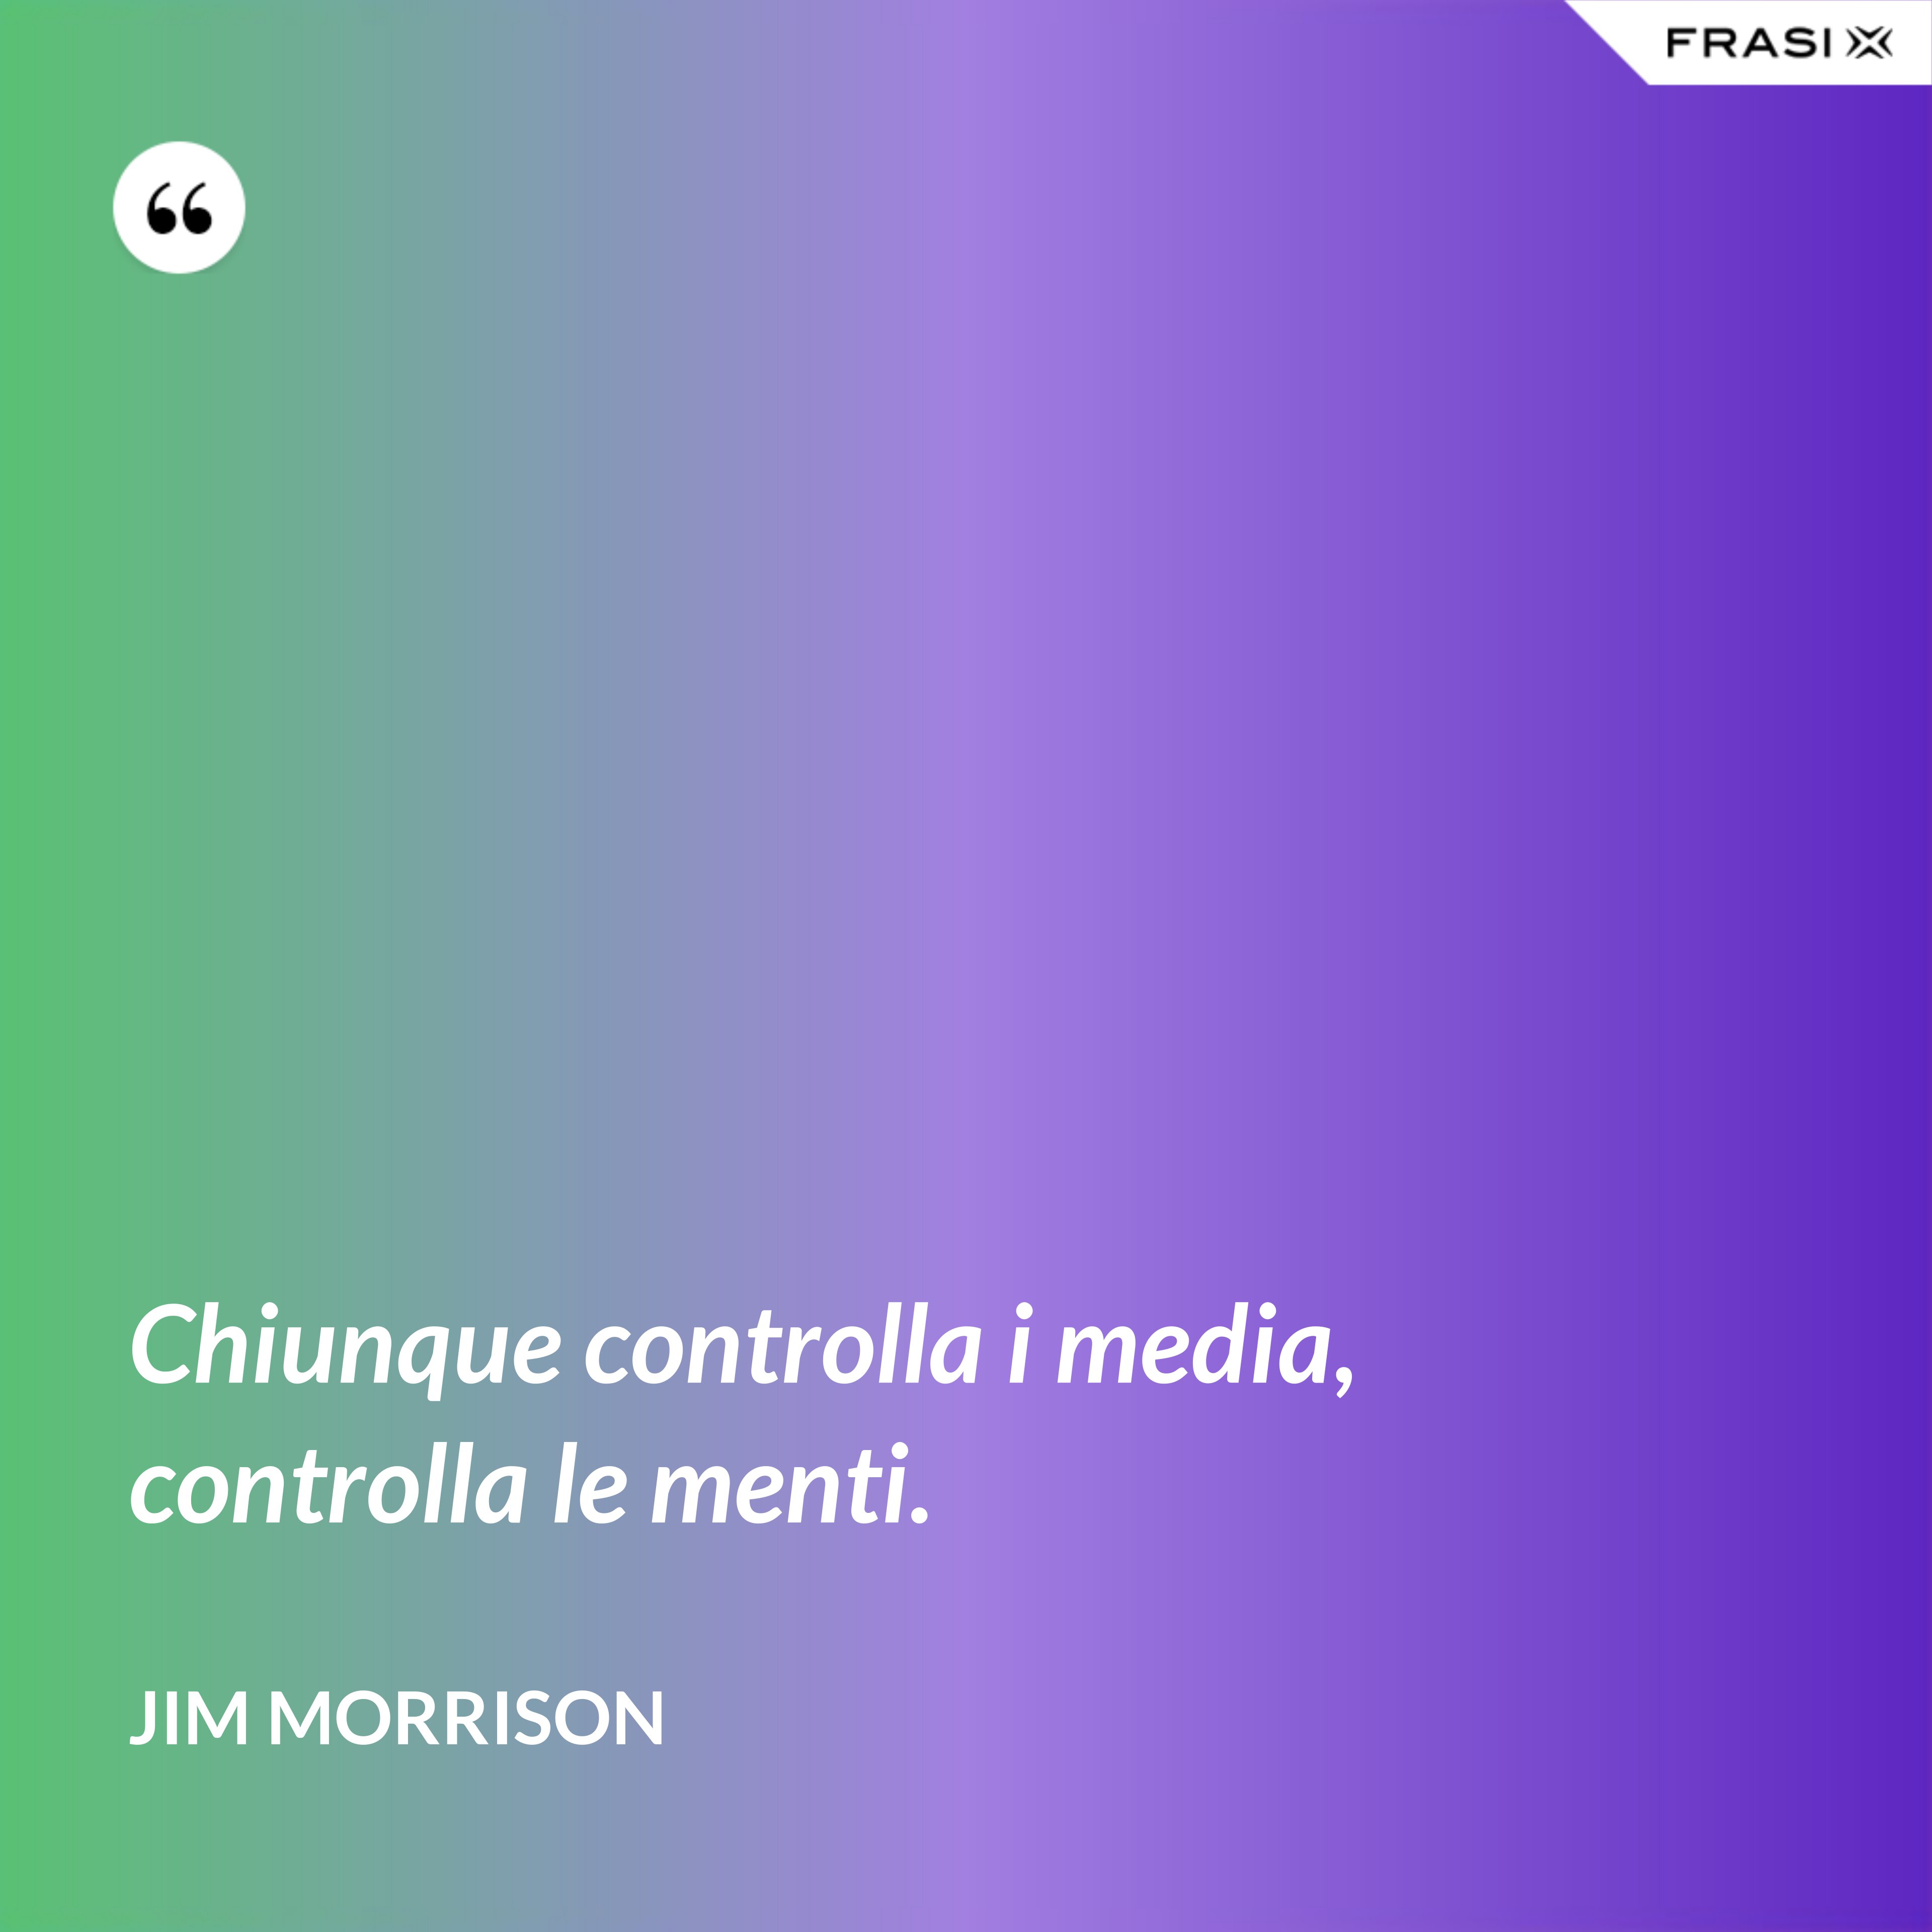 Chiunque controlla i media, controlla le menti. - Jim Morrison